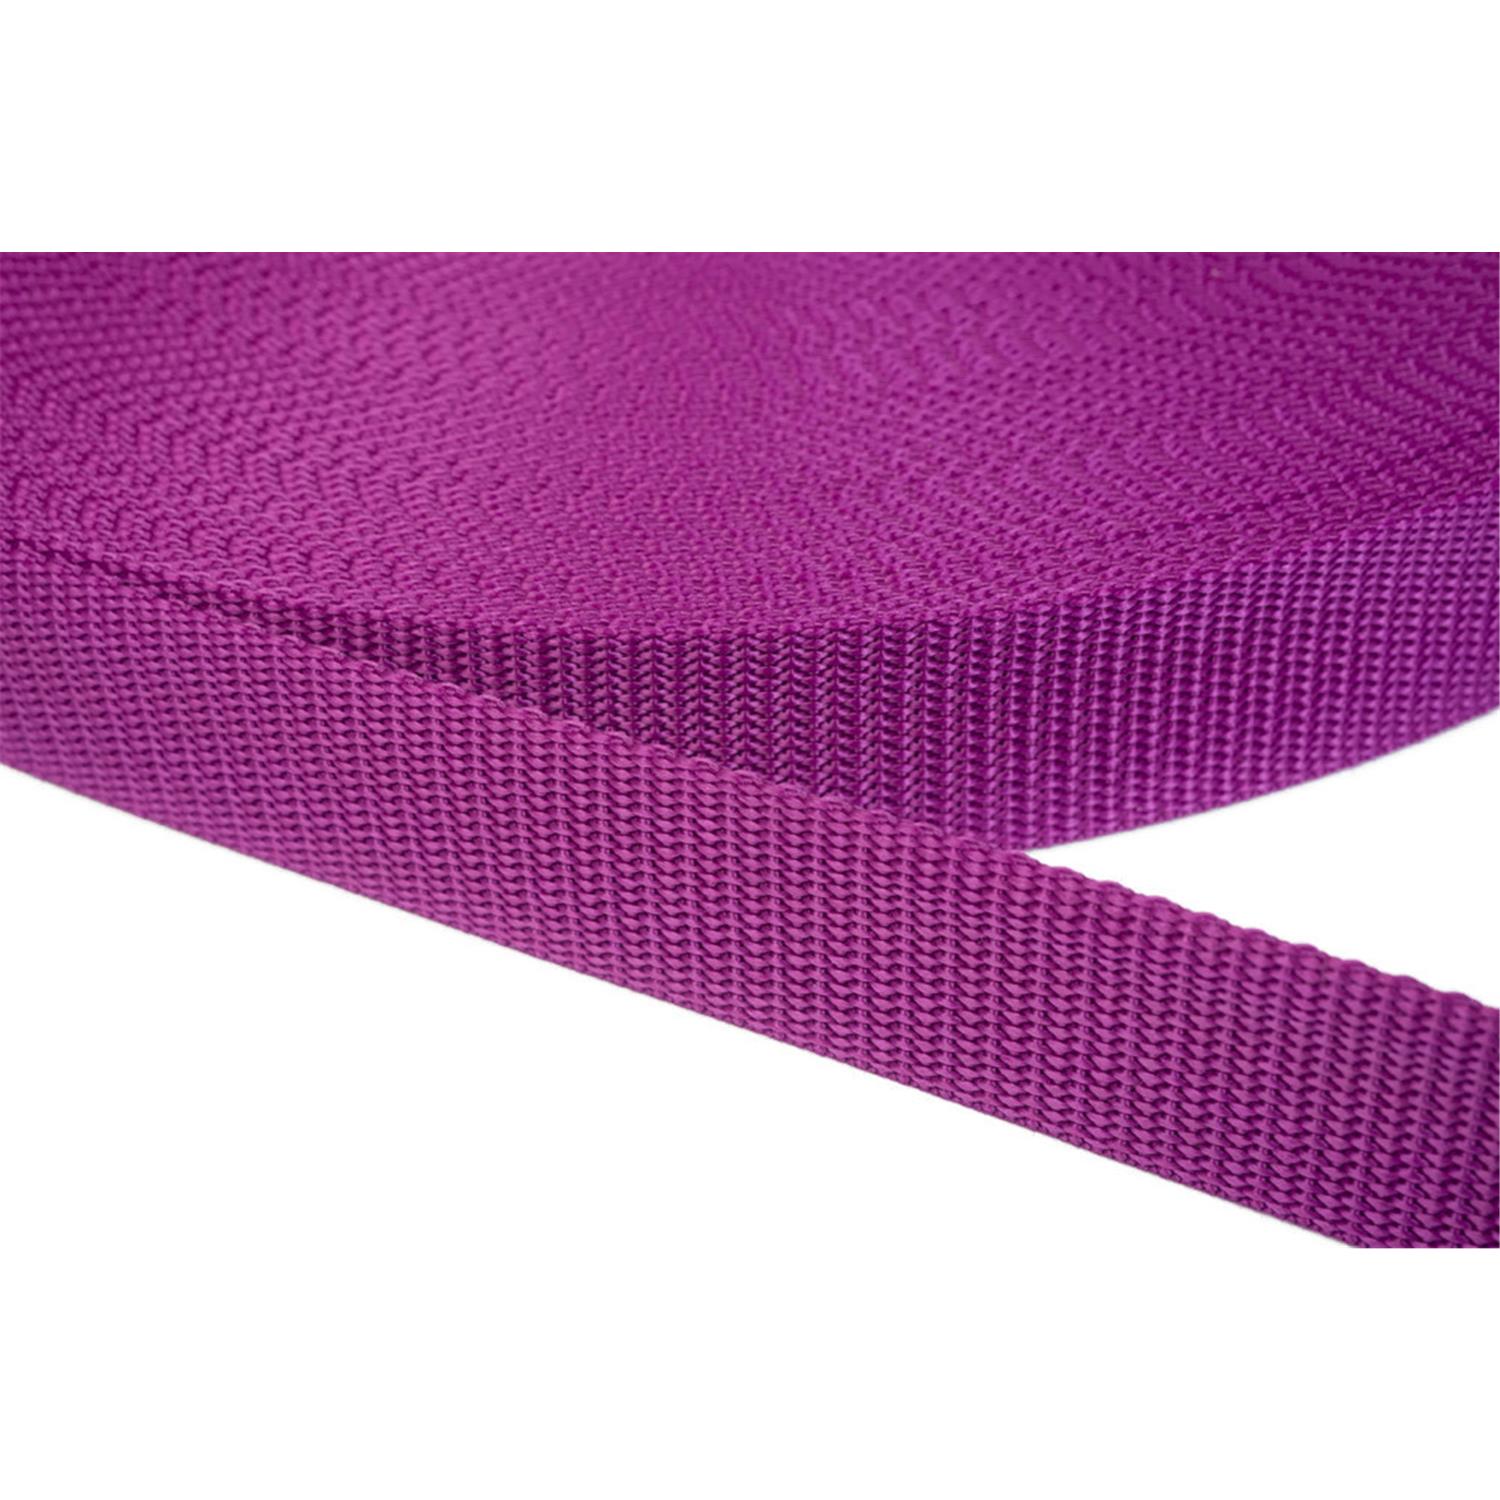 Gurtband 25mm breit aus Polypropylen in 41 Farben 22 - violettrot 12 Meter